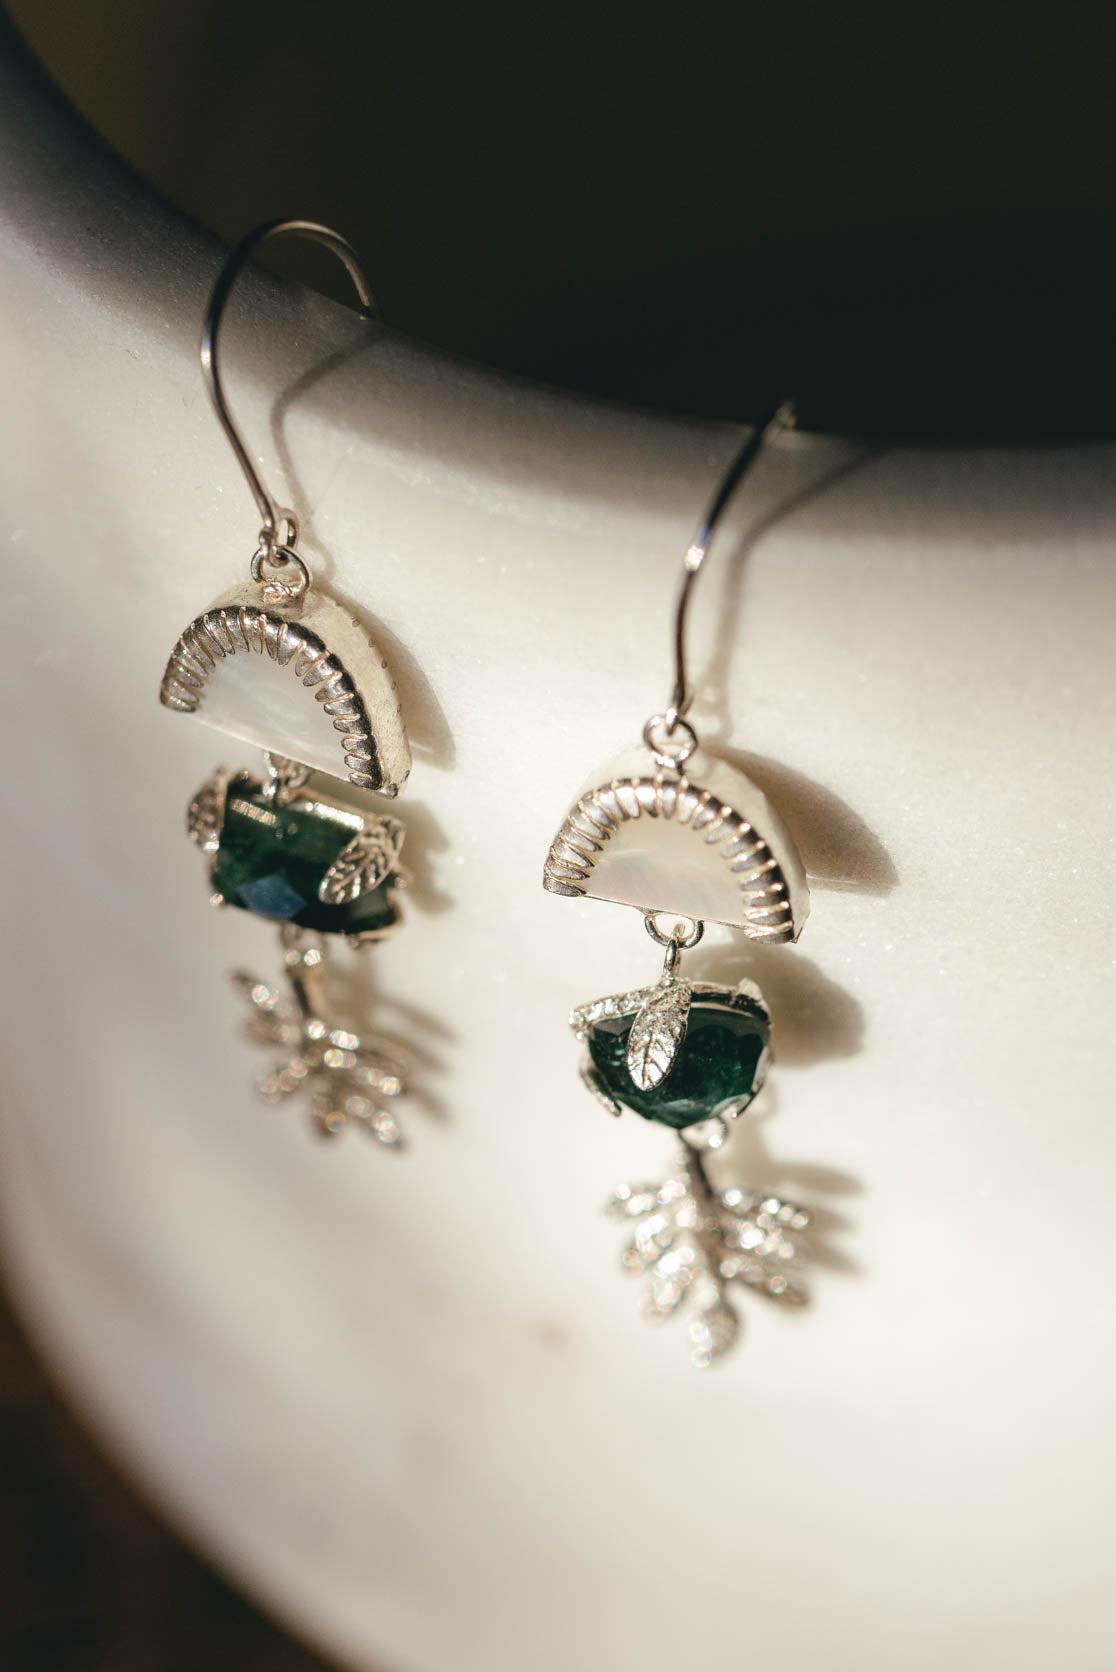 Buy Emerald Green Earrings, Glass Bead Earrings, Green Jewelry, Czech Glass Teardrop  Earrings, Green Glass Teardrop Earrings, UK Shop Online in India - Etsy